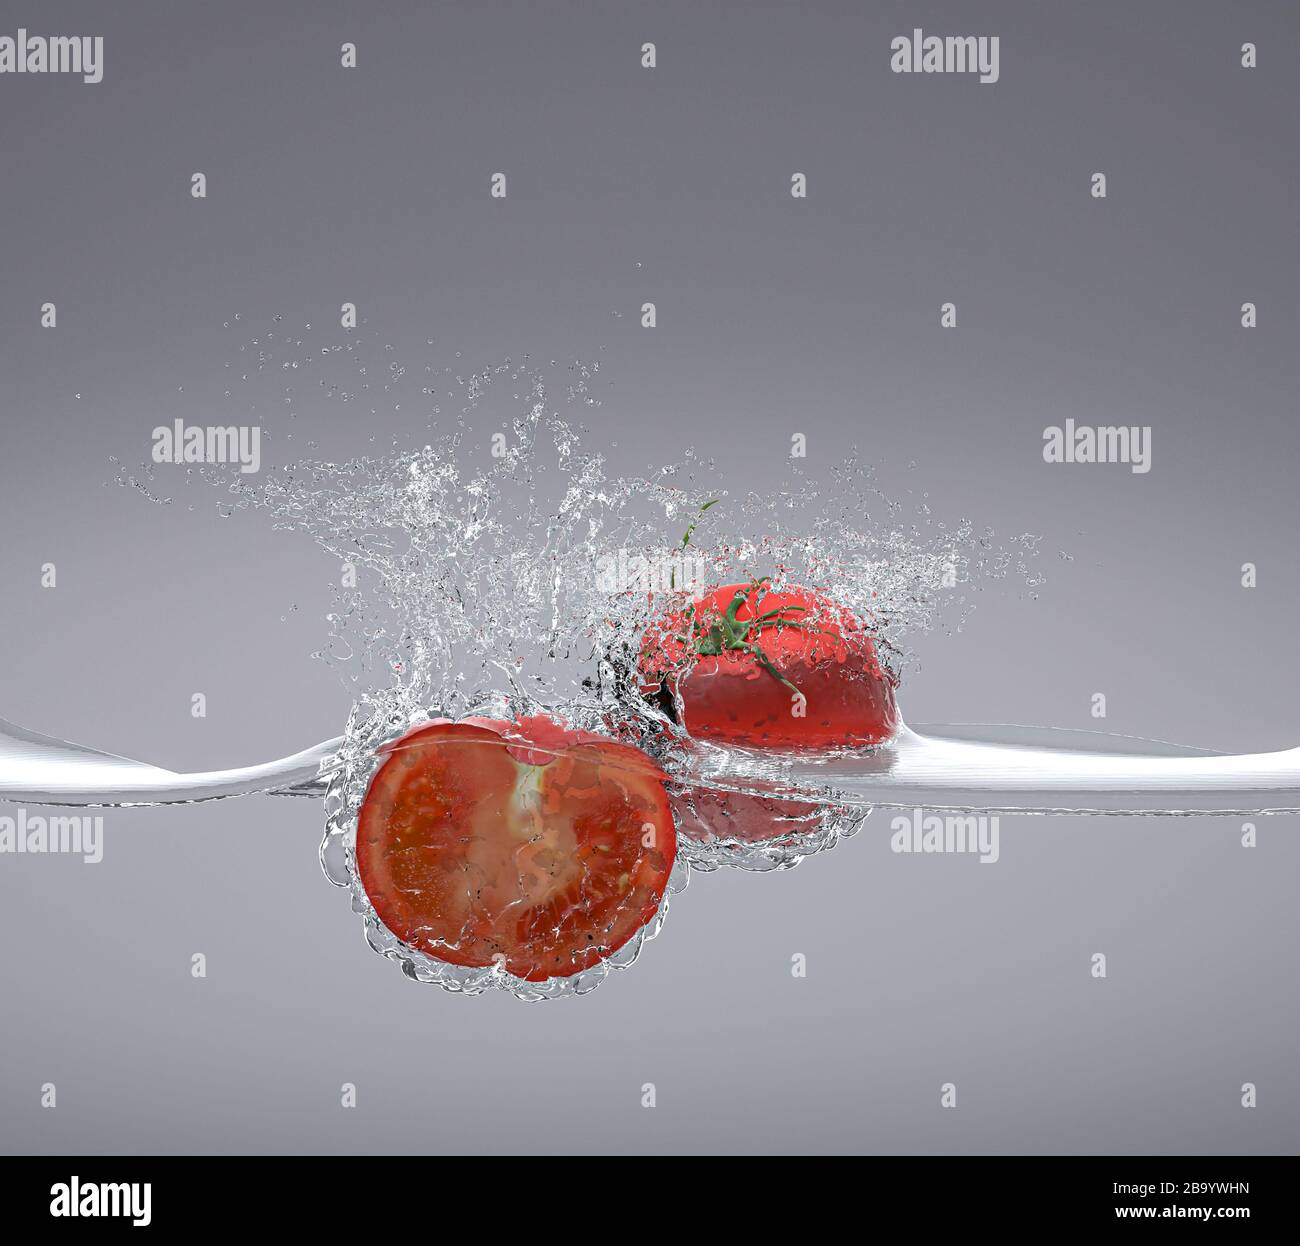 i pomodori cadono nell'acqua spruzzando intorno. concetto di alimento fresco e naturale. rendering 3d. nessuno intorno Foto Stock